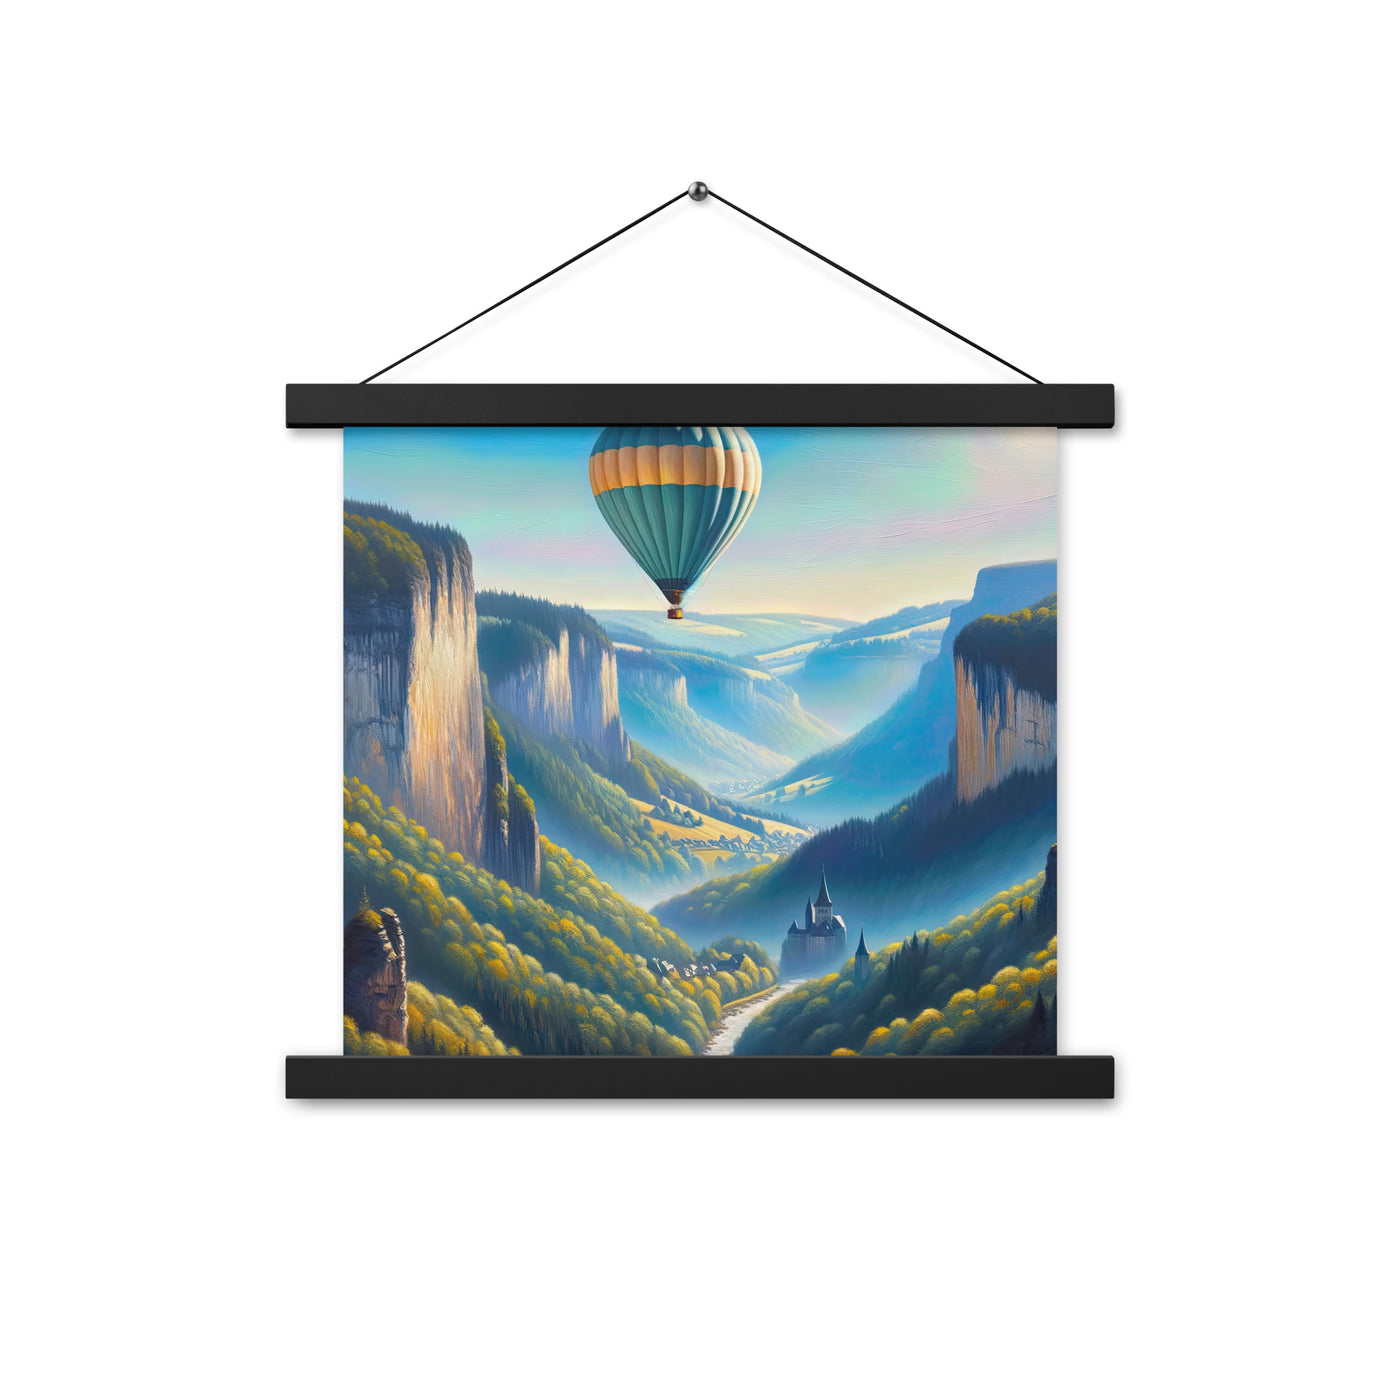 Ölgemälde einer ruhigen Szene in Luxemburg mit Heißluftballon und blauem Himmel - Premium Poster mit Aufhängung berge xxx yyy zzz 35.6 x 35.6 cm